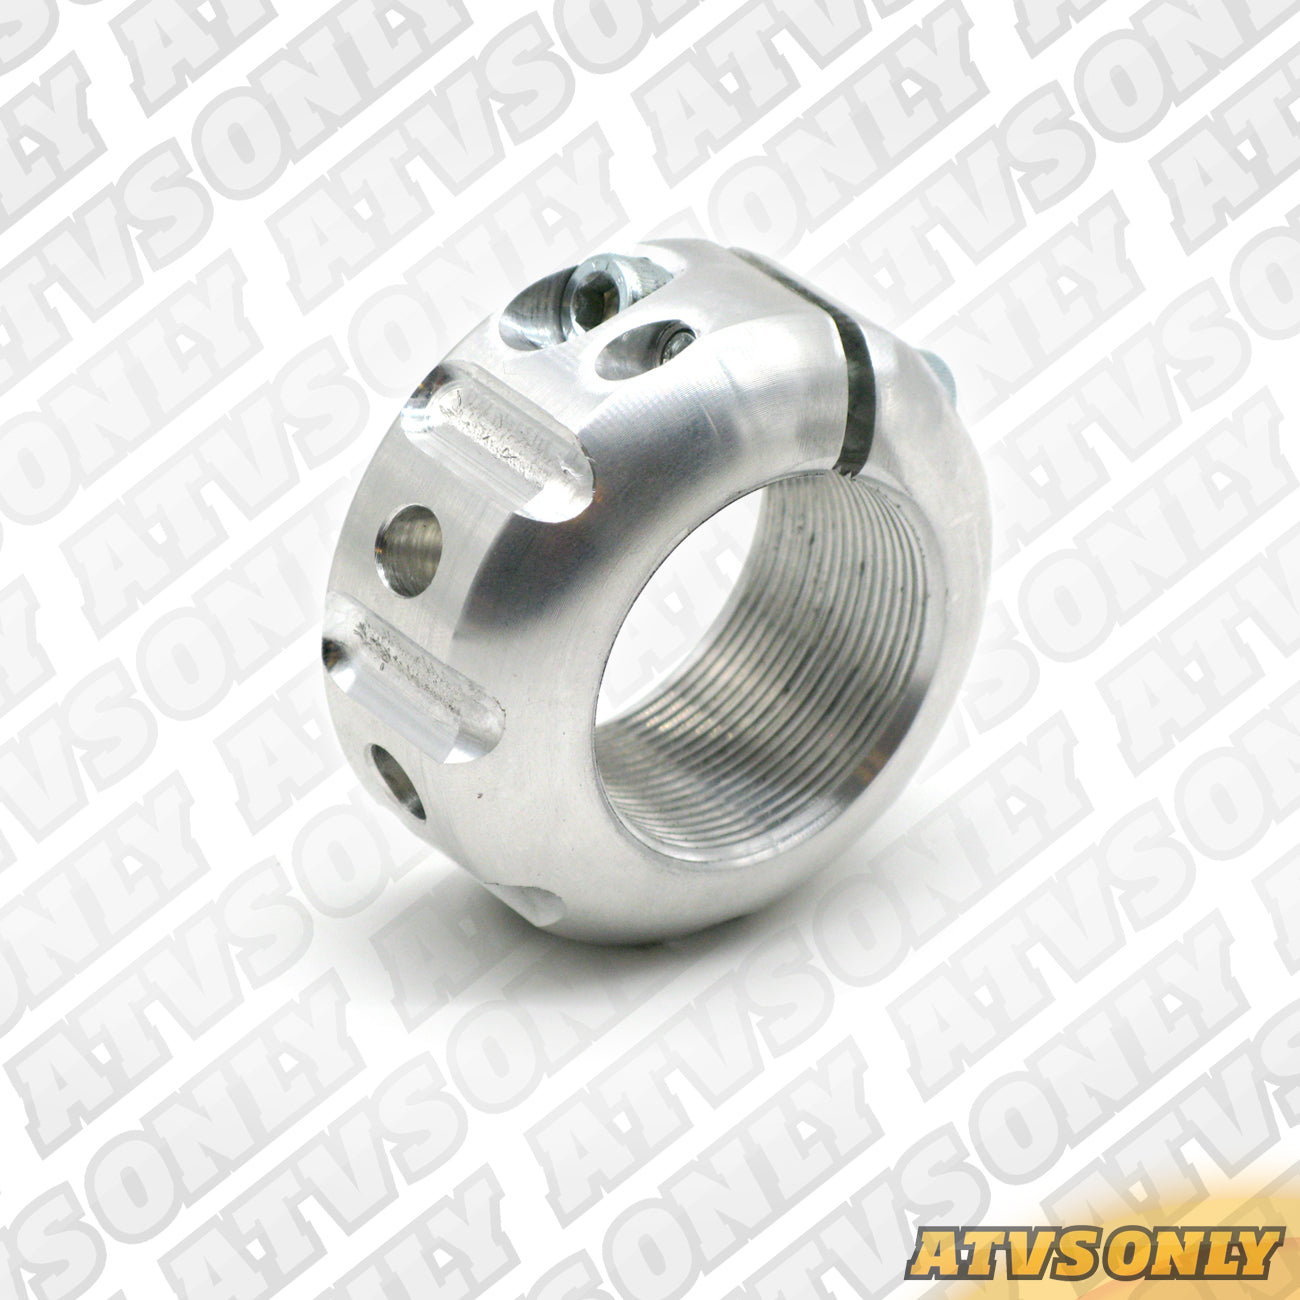 Rear Axle Locking Nut for Kawasaki KFX450 ’07-